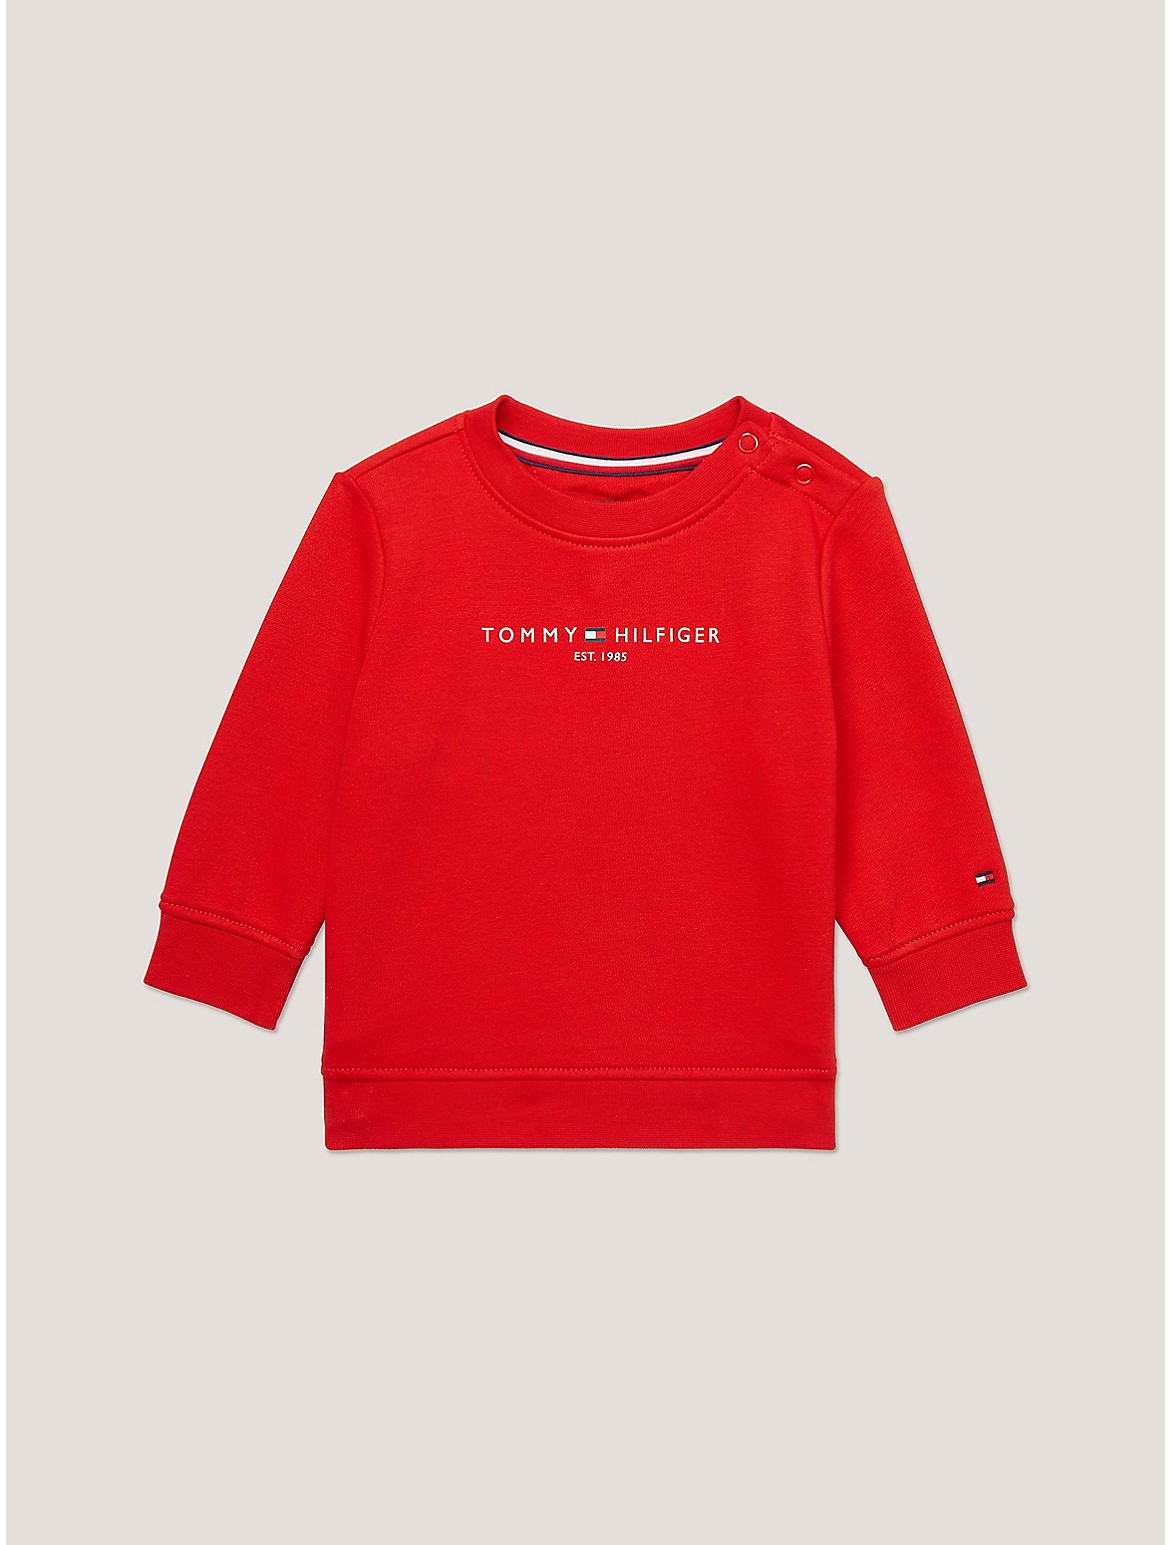 Tommy Hilfiger Boys' Babies' Tommy Logo Sweatshirt - Red - 18M